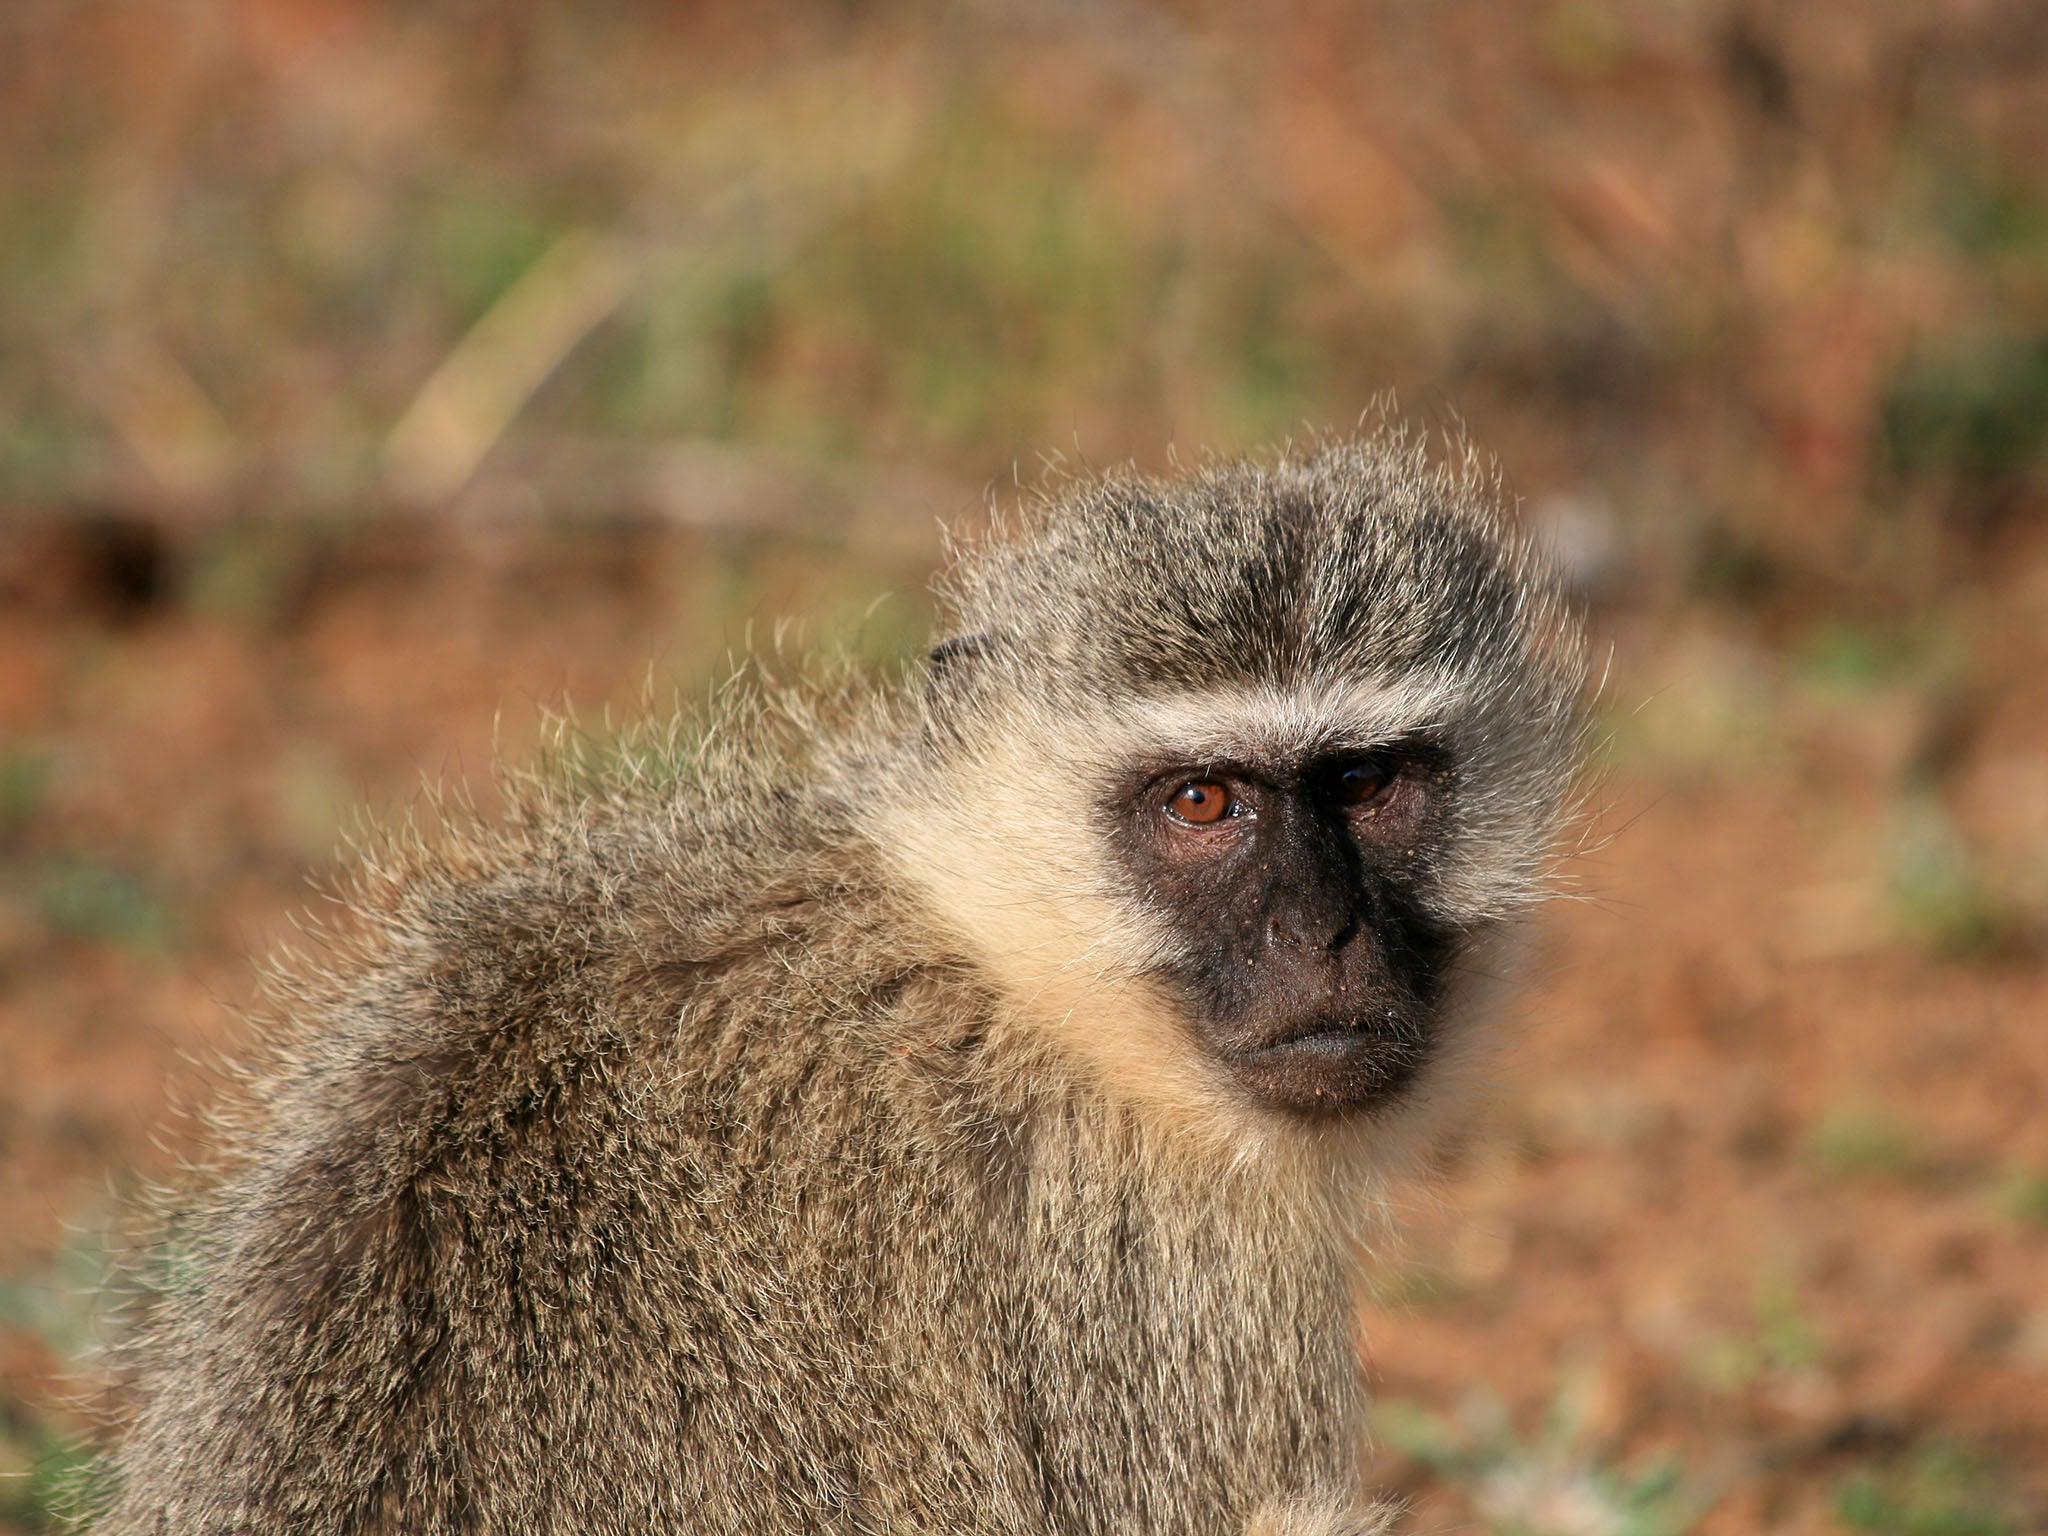 Vervet monkeys enjoy a range of fruit and often get into mischief